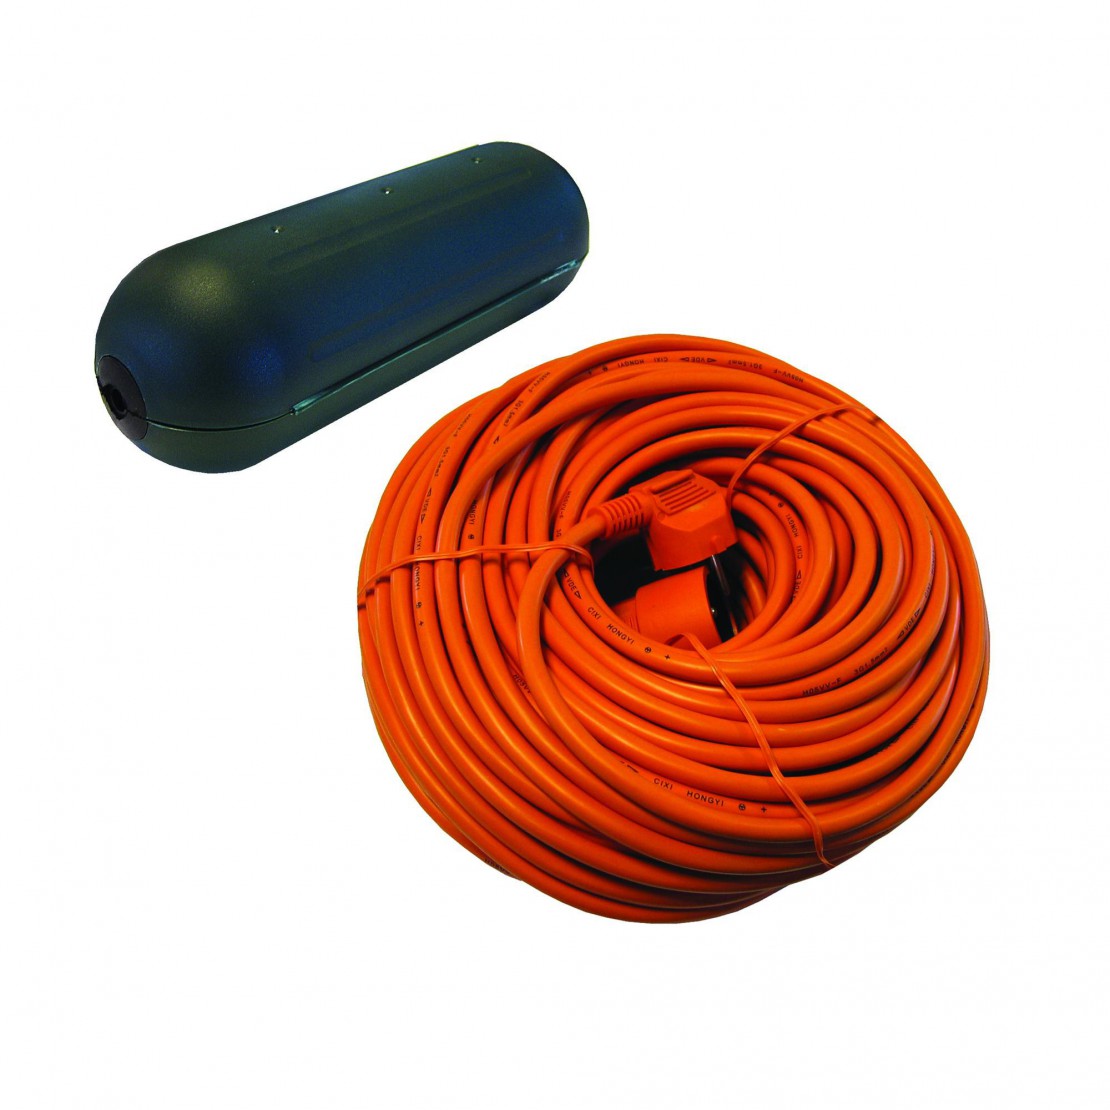 Boitier de protection étanche pour câble + Rallonge orange - 20 m